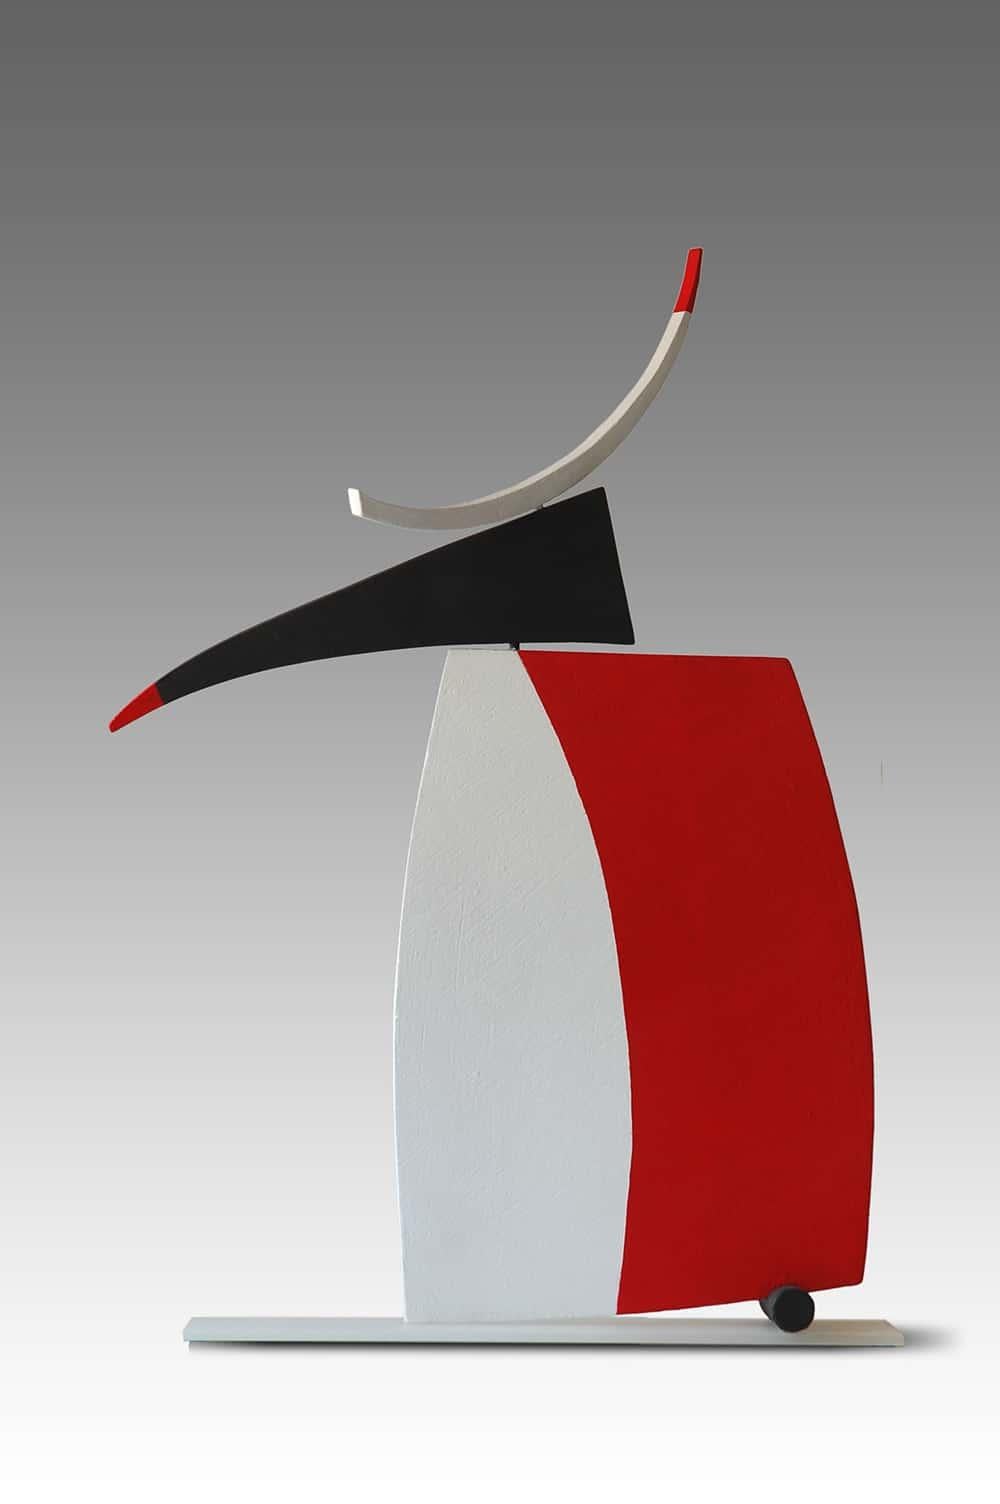 Ignite ist eine einzigartige, aus gebranntem Ton gefertigte, bemalte und auf Glas montierte Skulptur der zeitgenössischen Künstlerin Patricia VOLK. Die Abmessungen betragen 63 × 51 × 8 cm (24,8 × 20,1 × 3,1 in). 
Die Skulptur ist signiert und wird